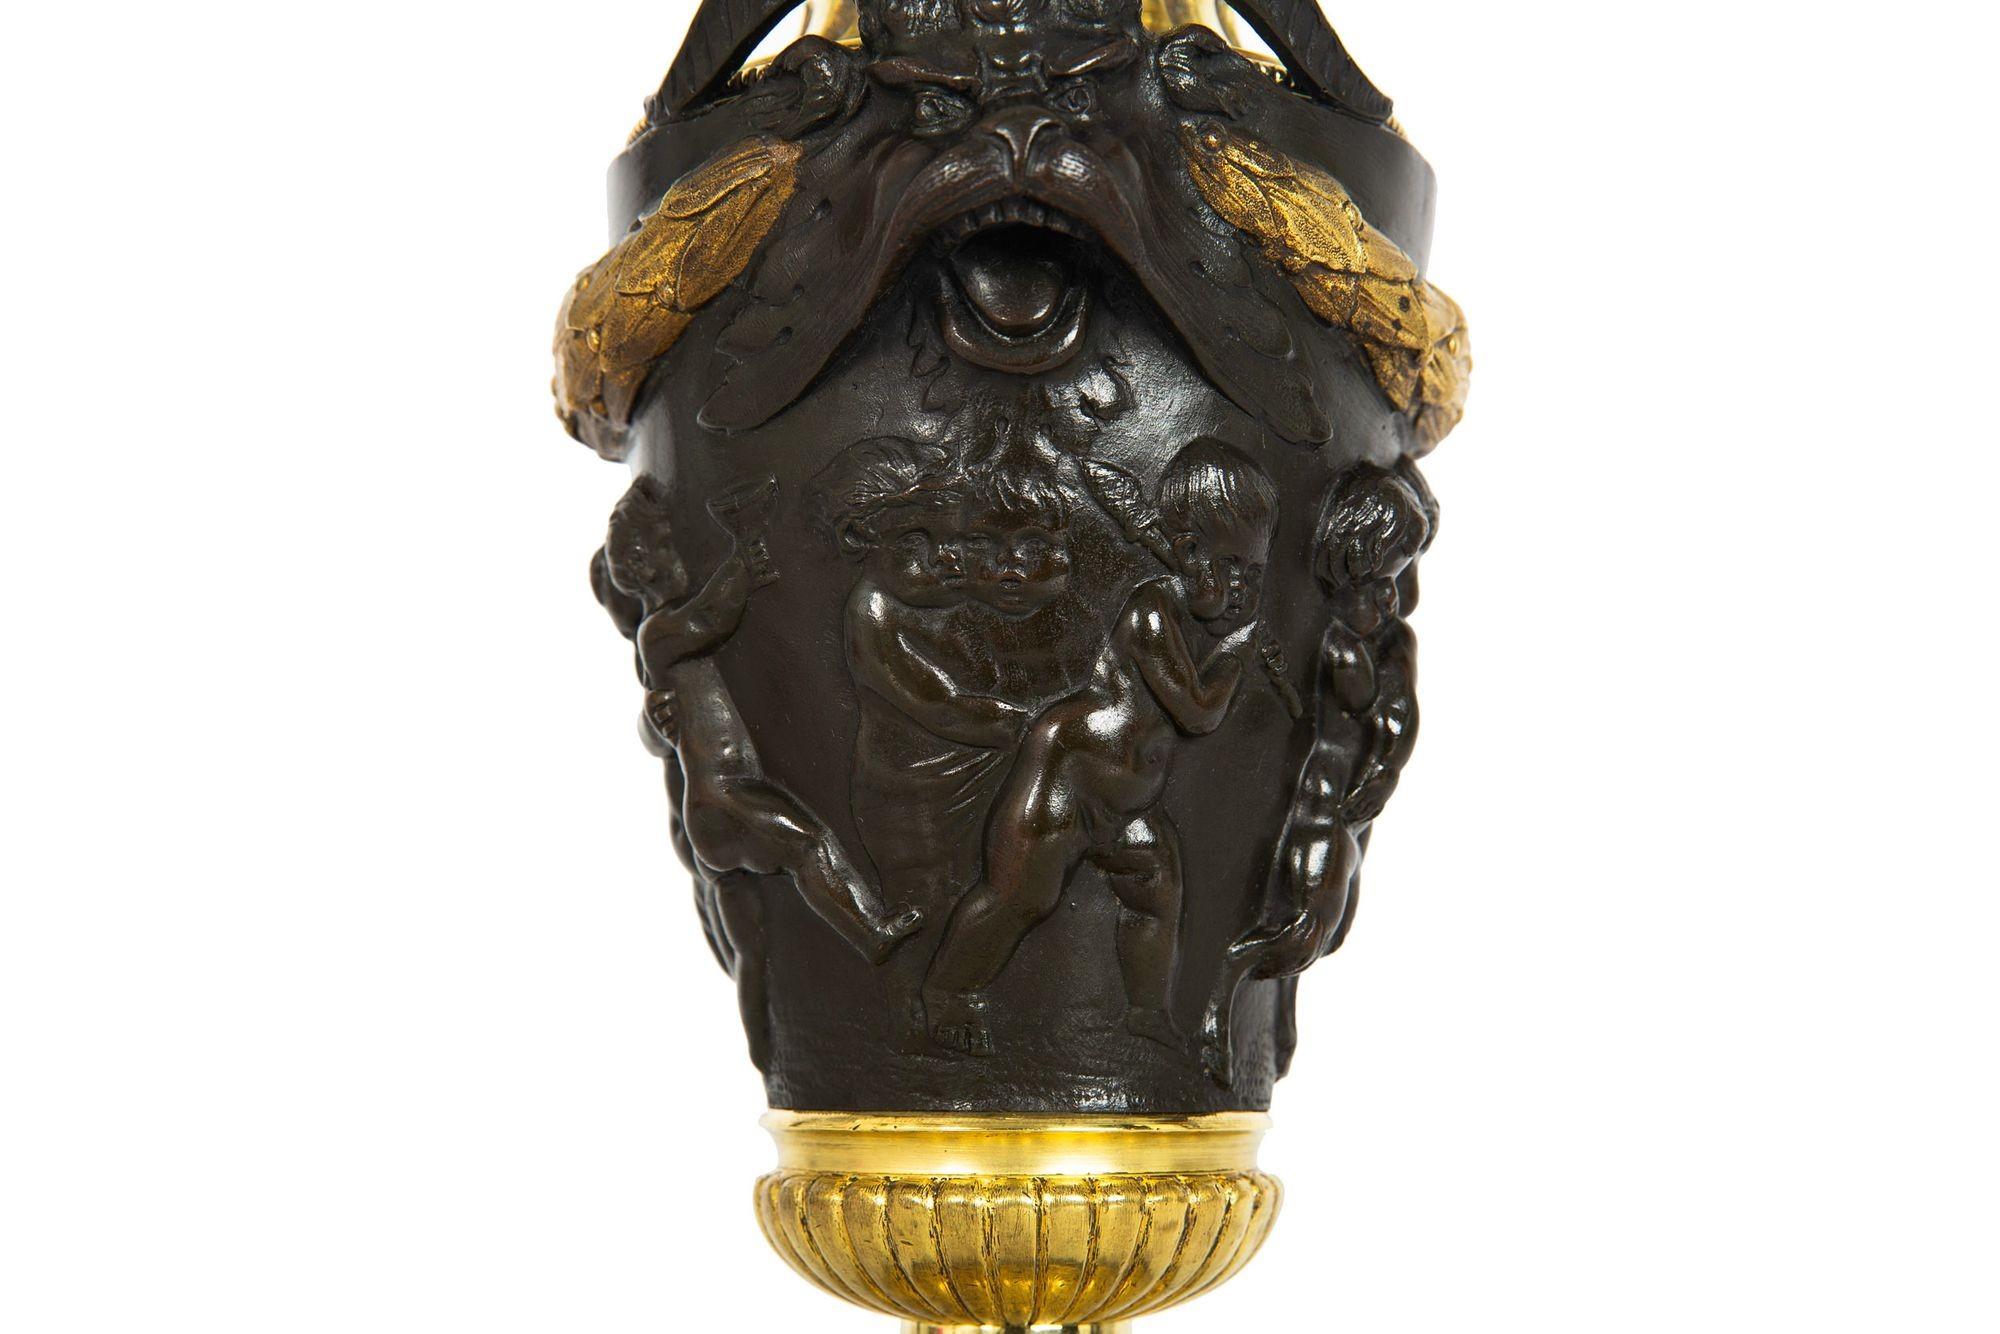 Grand Tour Bronze Cassolette Urn Vase after Claude Michel Clodion c. 1870 For Sale 2